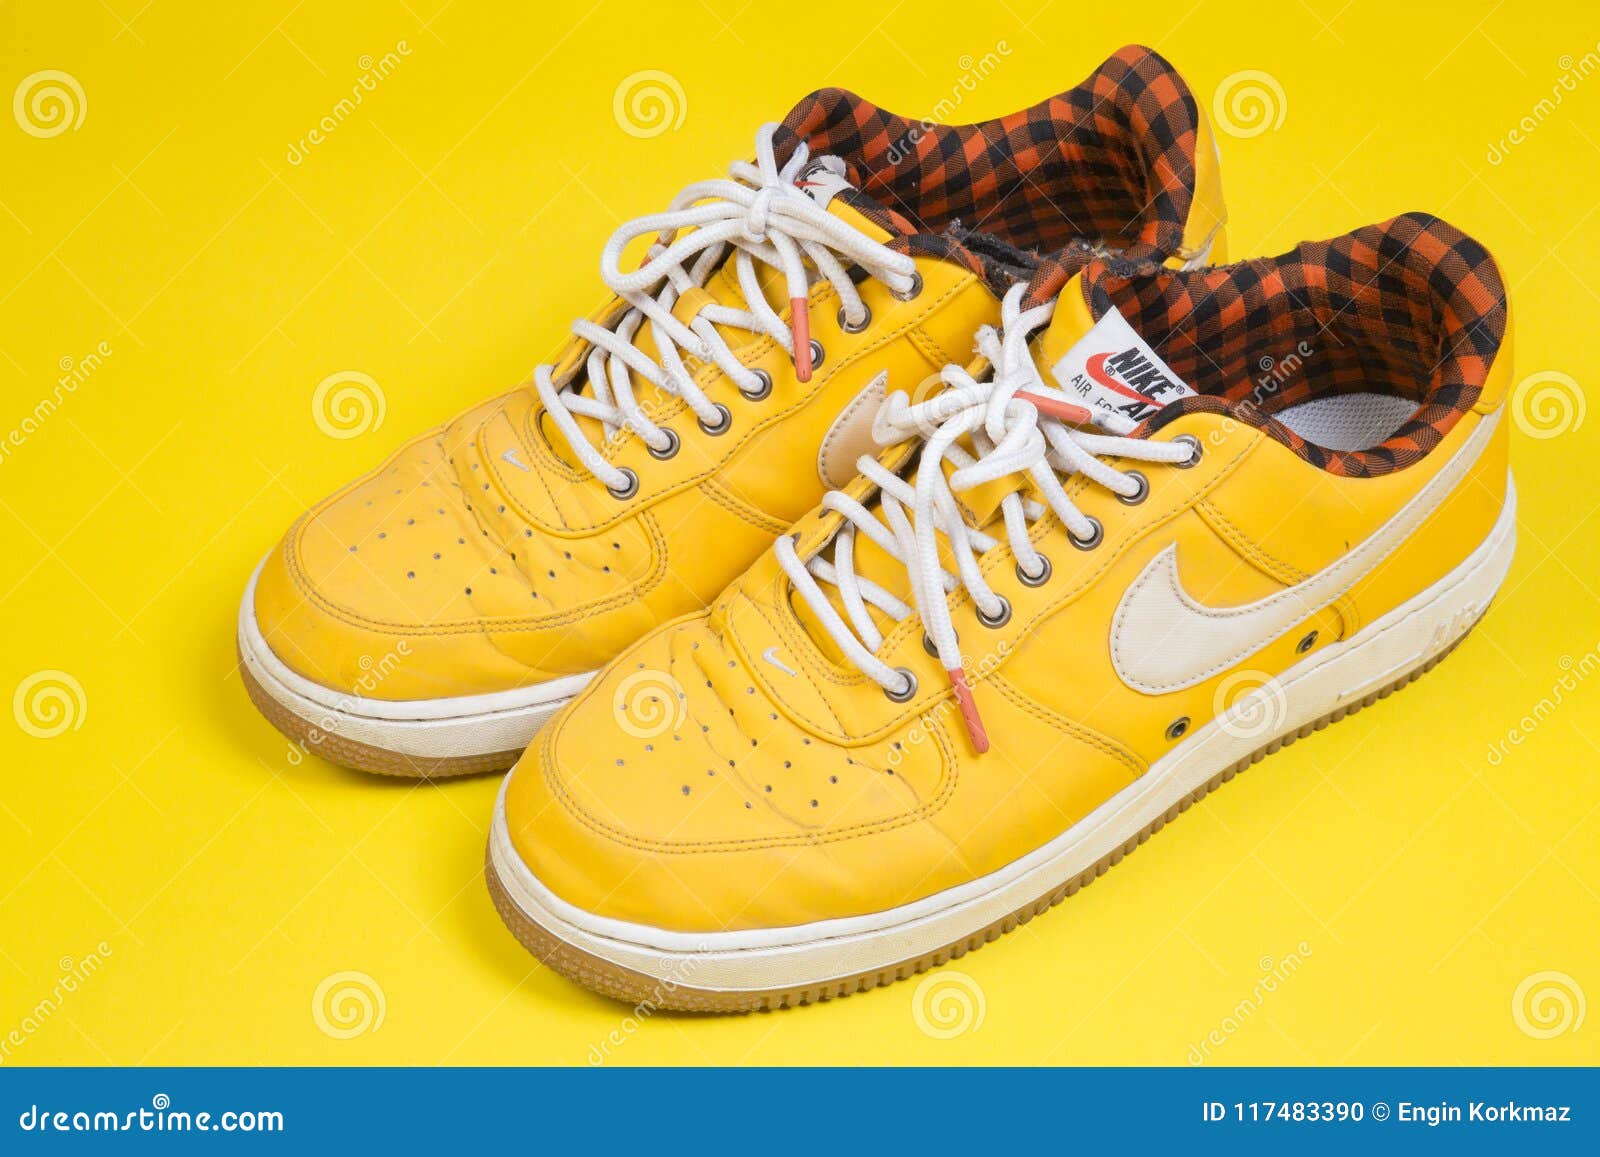 Pares Usados De Zapatillas De Deporte Amarillas De Nike Air Force En Fondo Amarillo editorial - Imagen de editorial, cordones: 117483390